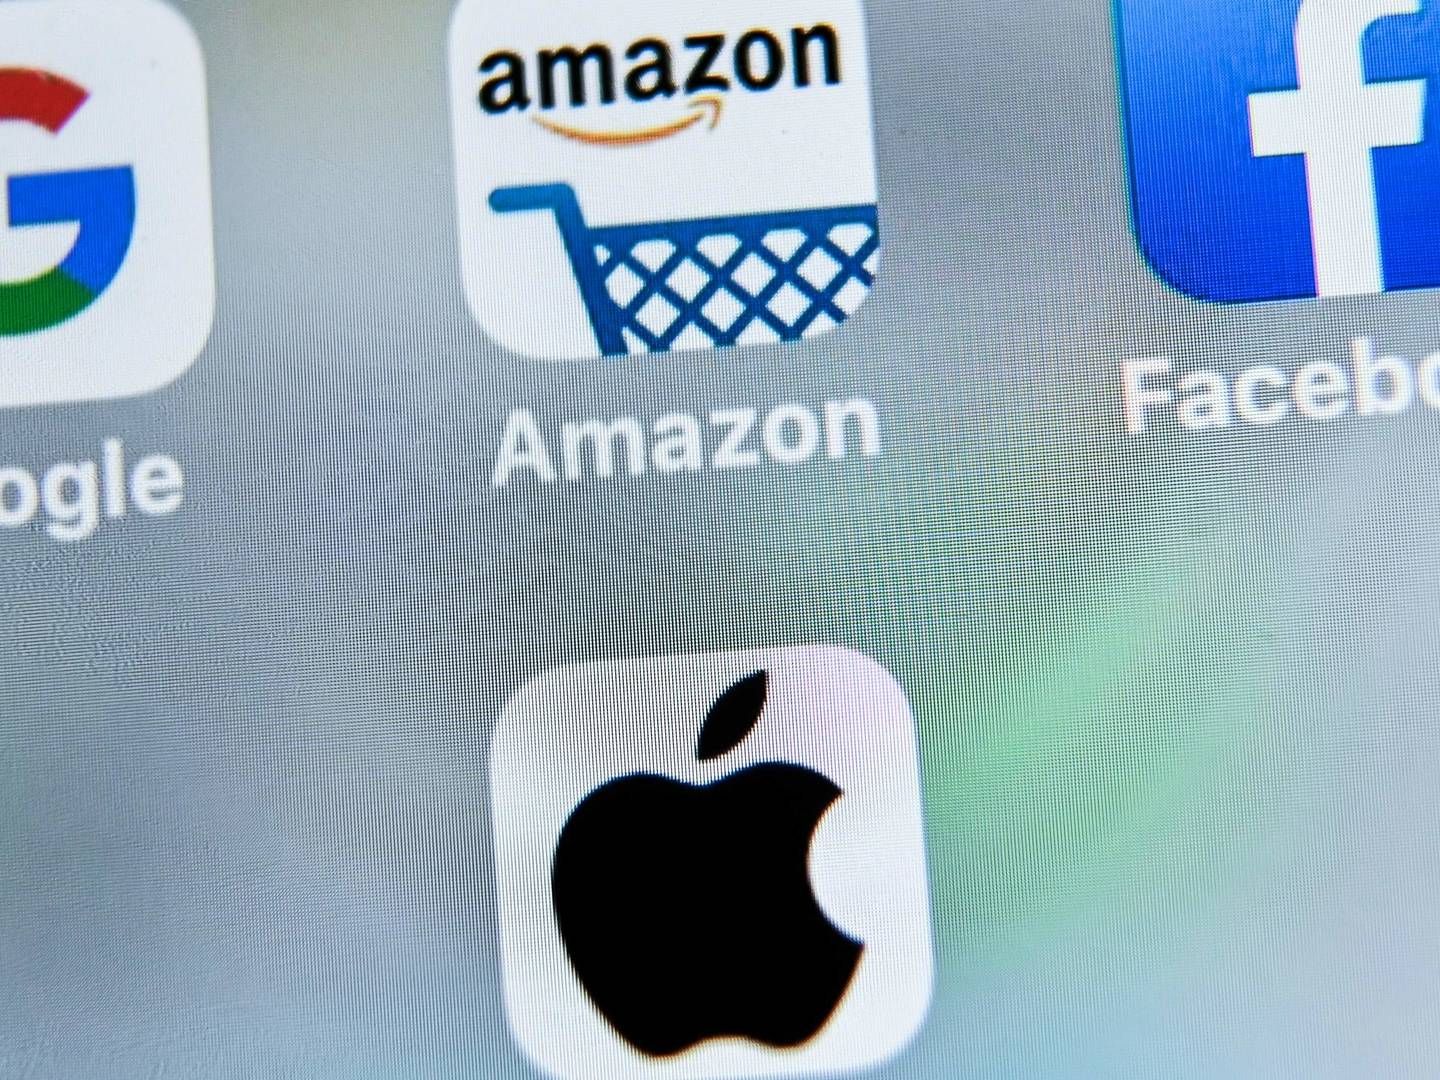 Et underudvalg til retsudvalget i Repræsentanternes Hus i USA mener, at Amazon, Apple, Facebook og Google har udnyttet en "monopollignende magt". | Foto: DENIS CHARLET/AFP